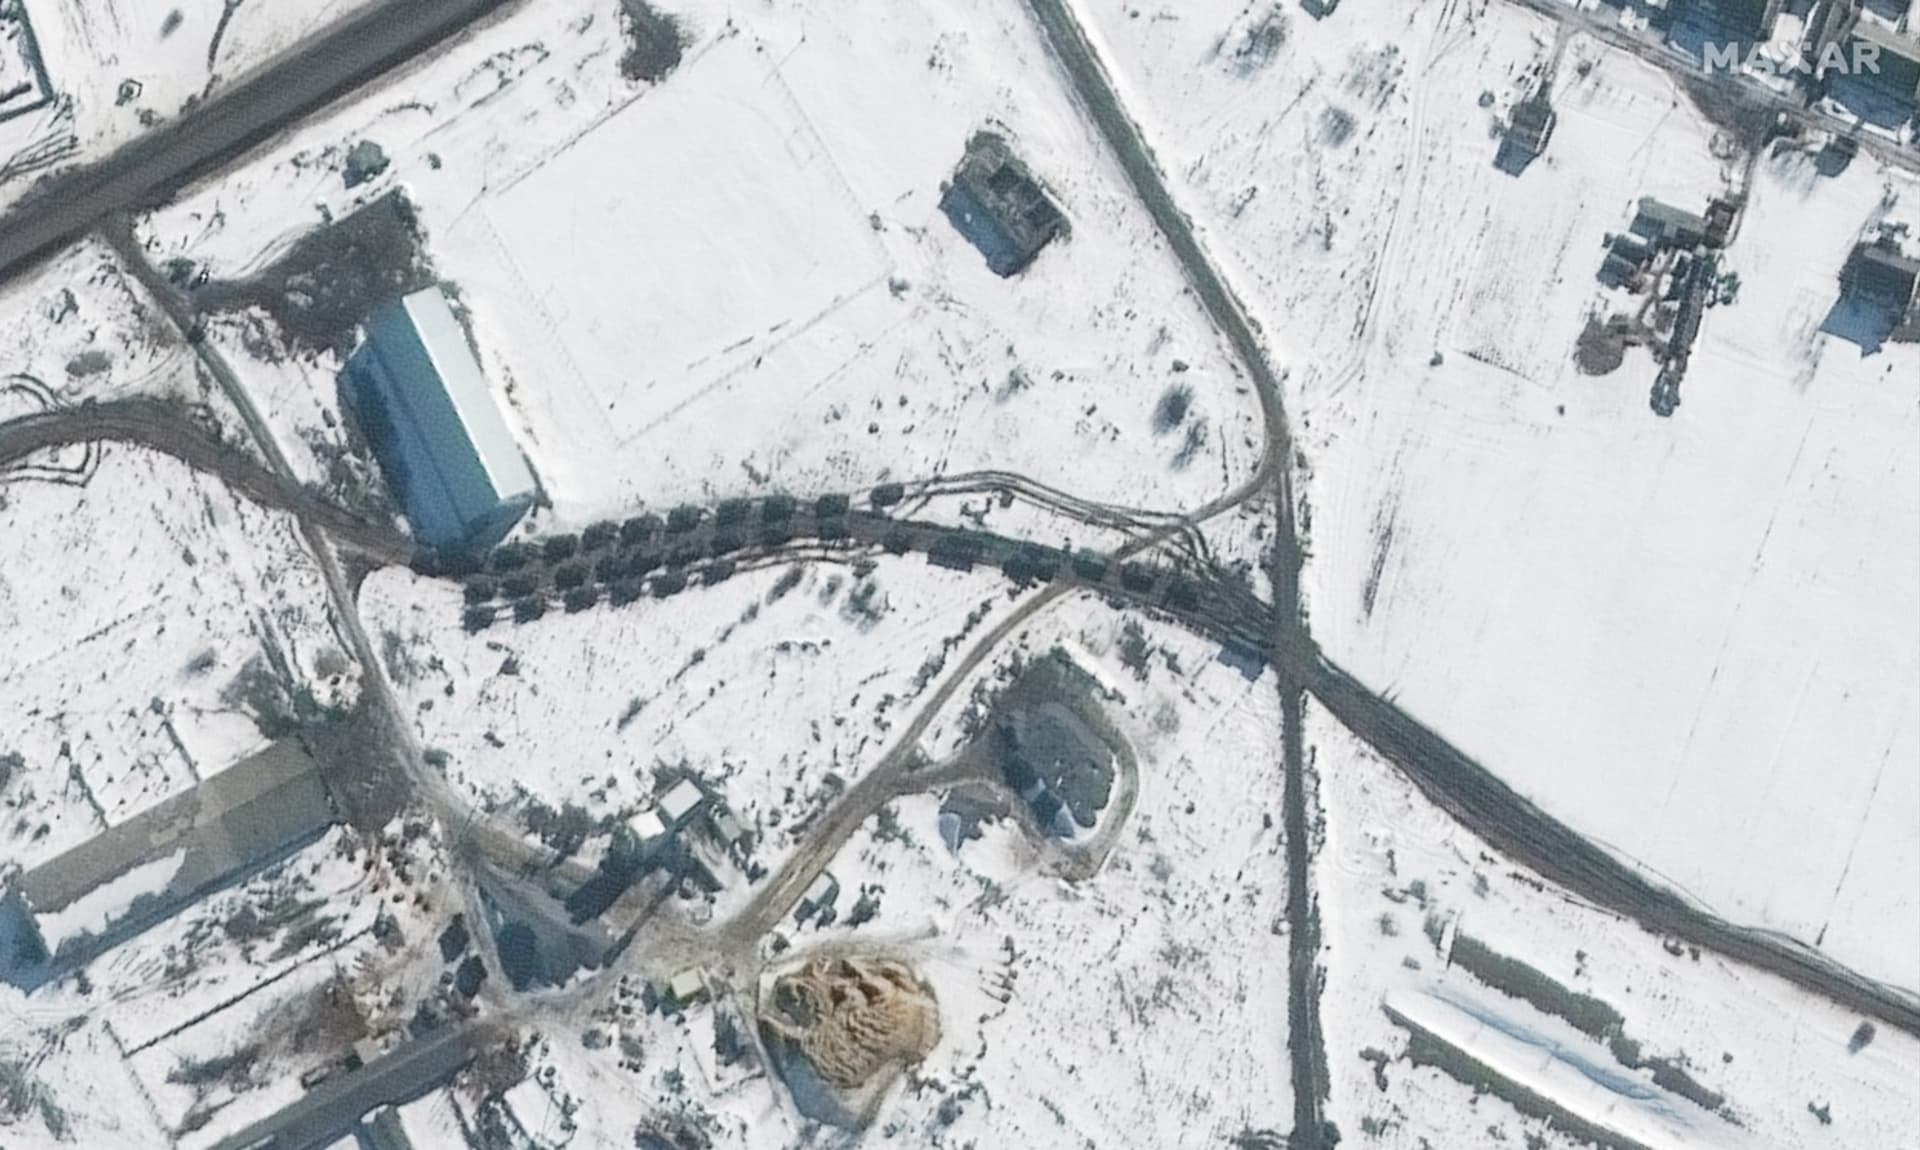 Satelitní snímek ukazuje bojový motostřelecký prapor v konvoji severovýchodně od posádky Soloti.